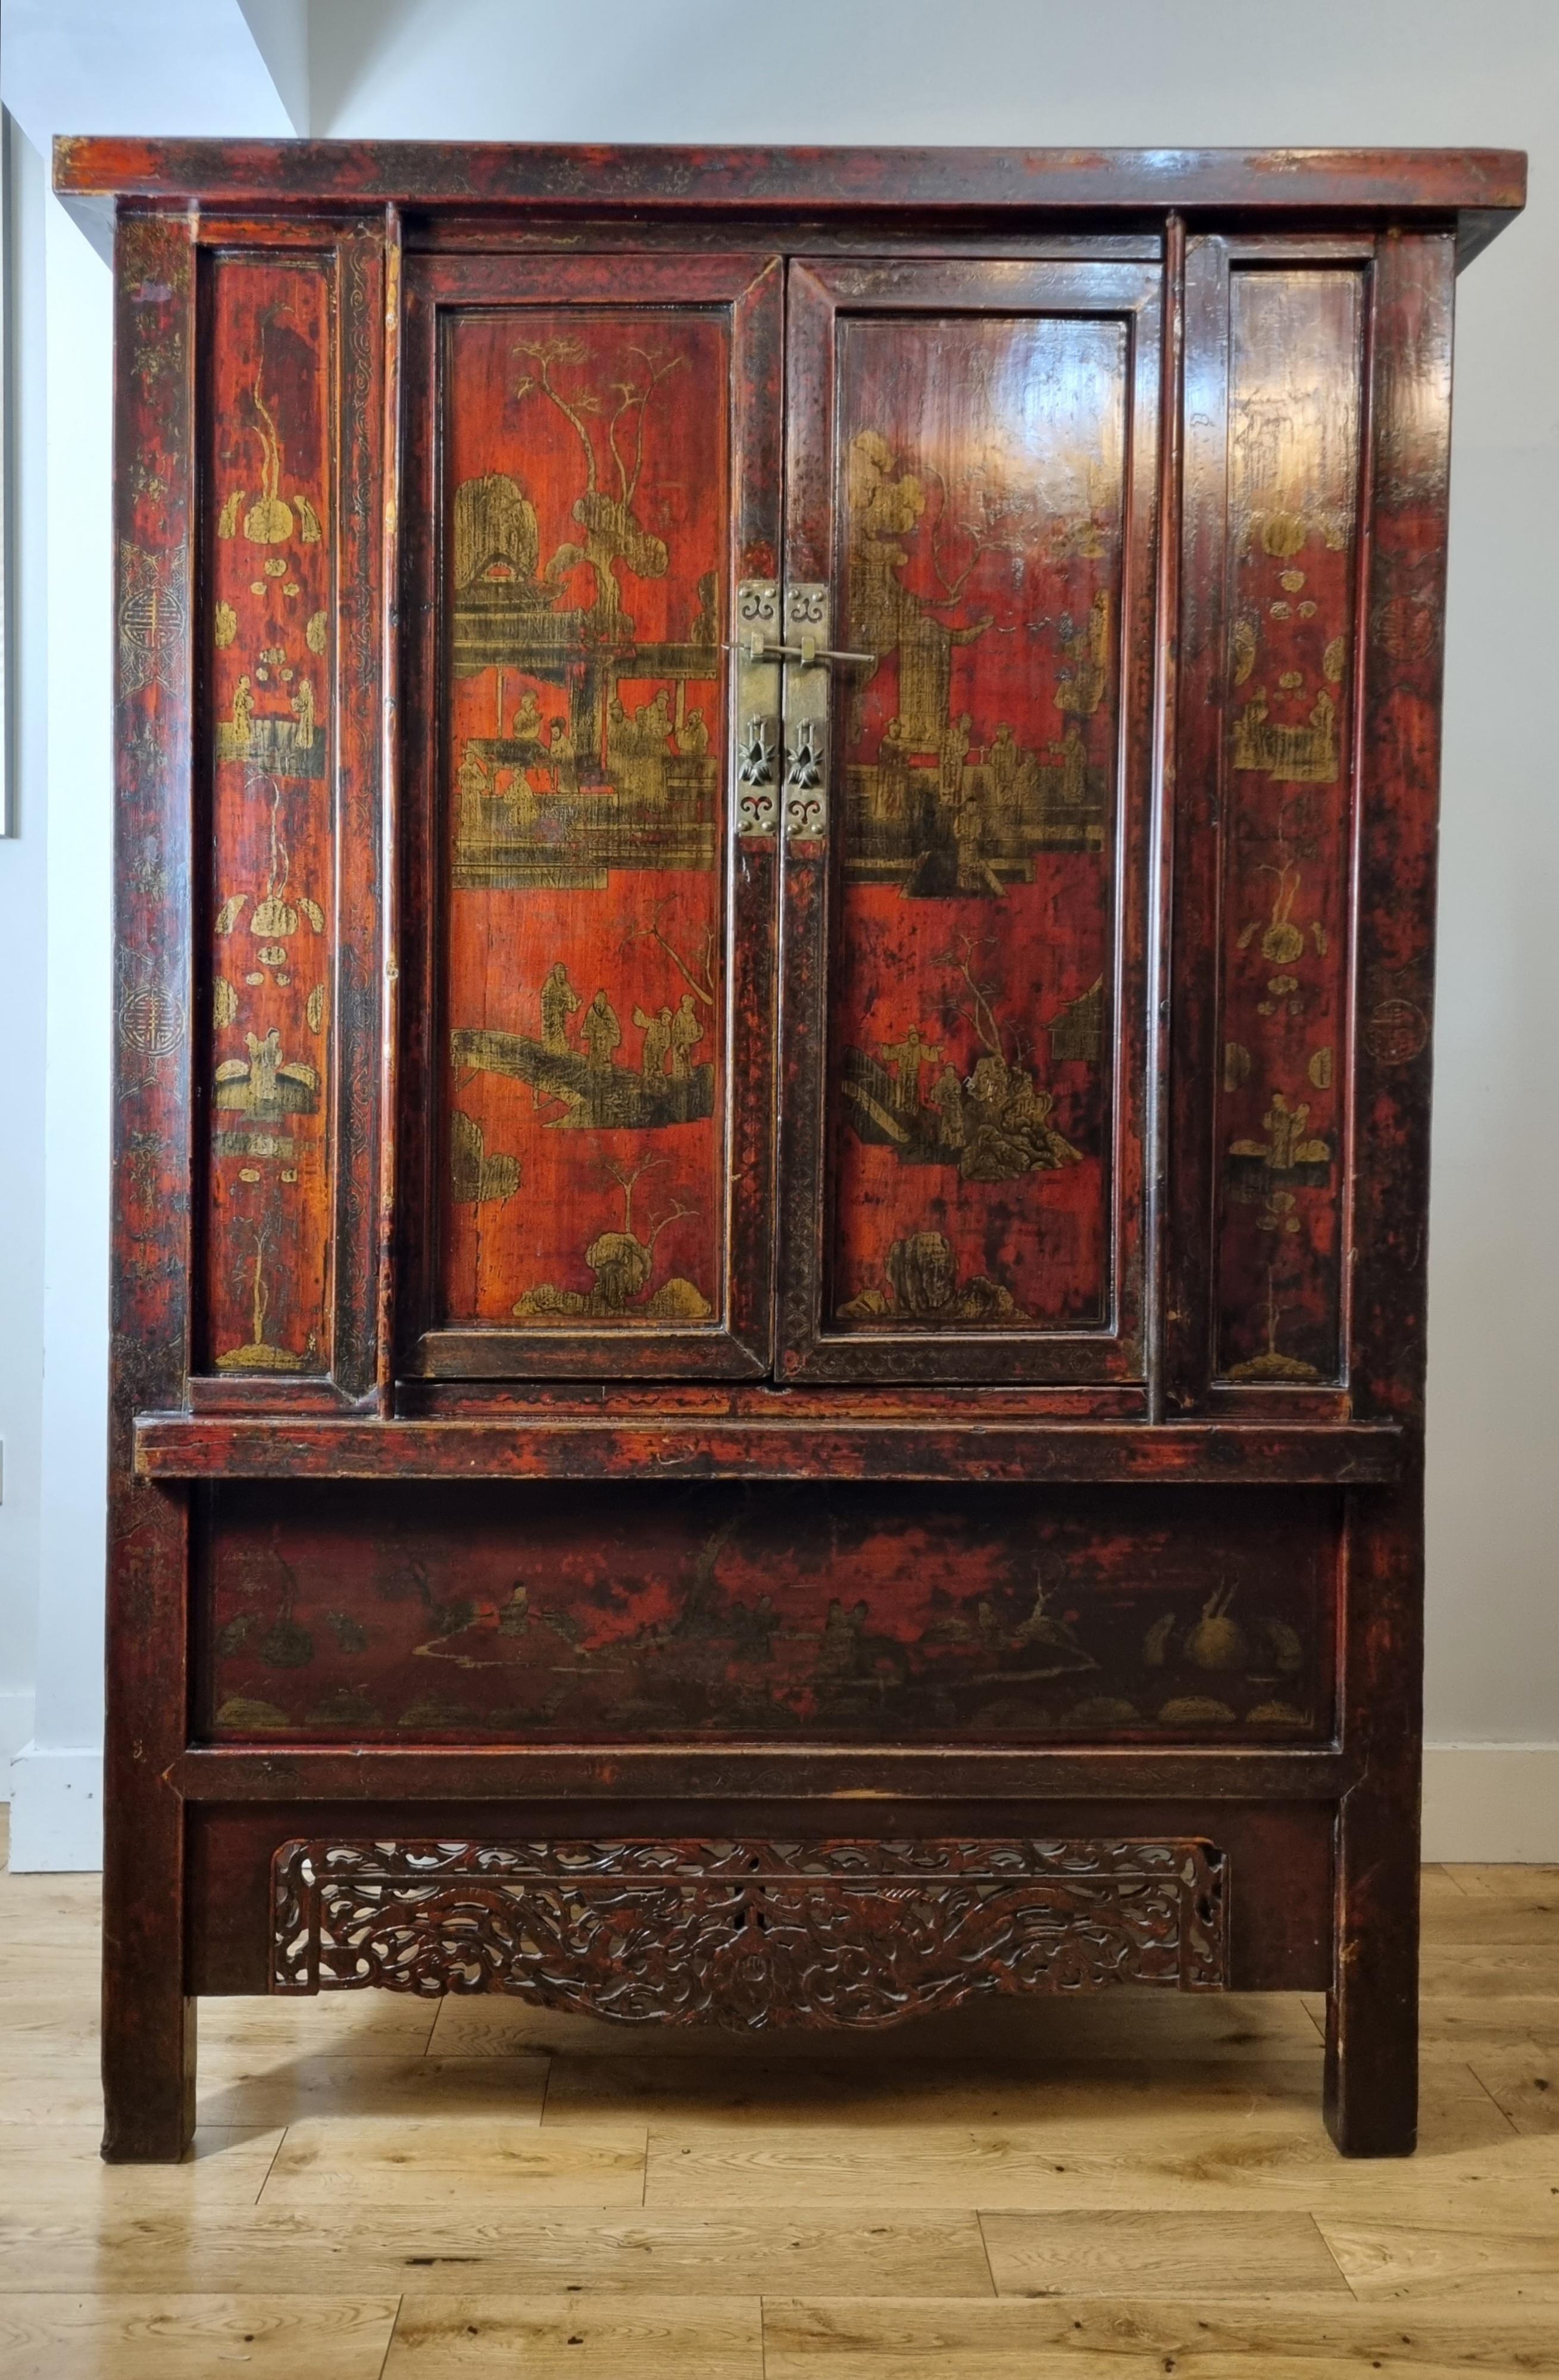 Chinesischer zweitüriger, rot lackierter Schrank aus Shanxi, China, 18. Jahrhundert, aus der Qing-Zeit.

Dieser atemberaubende Schrank ist mit Vergoldung und handgemalten Szenen auf den Paneelen verschönert, schön geschnitzt Schürze.

Der Schrank